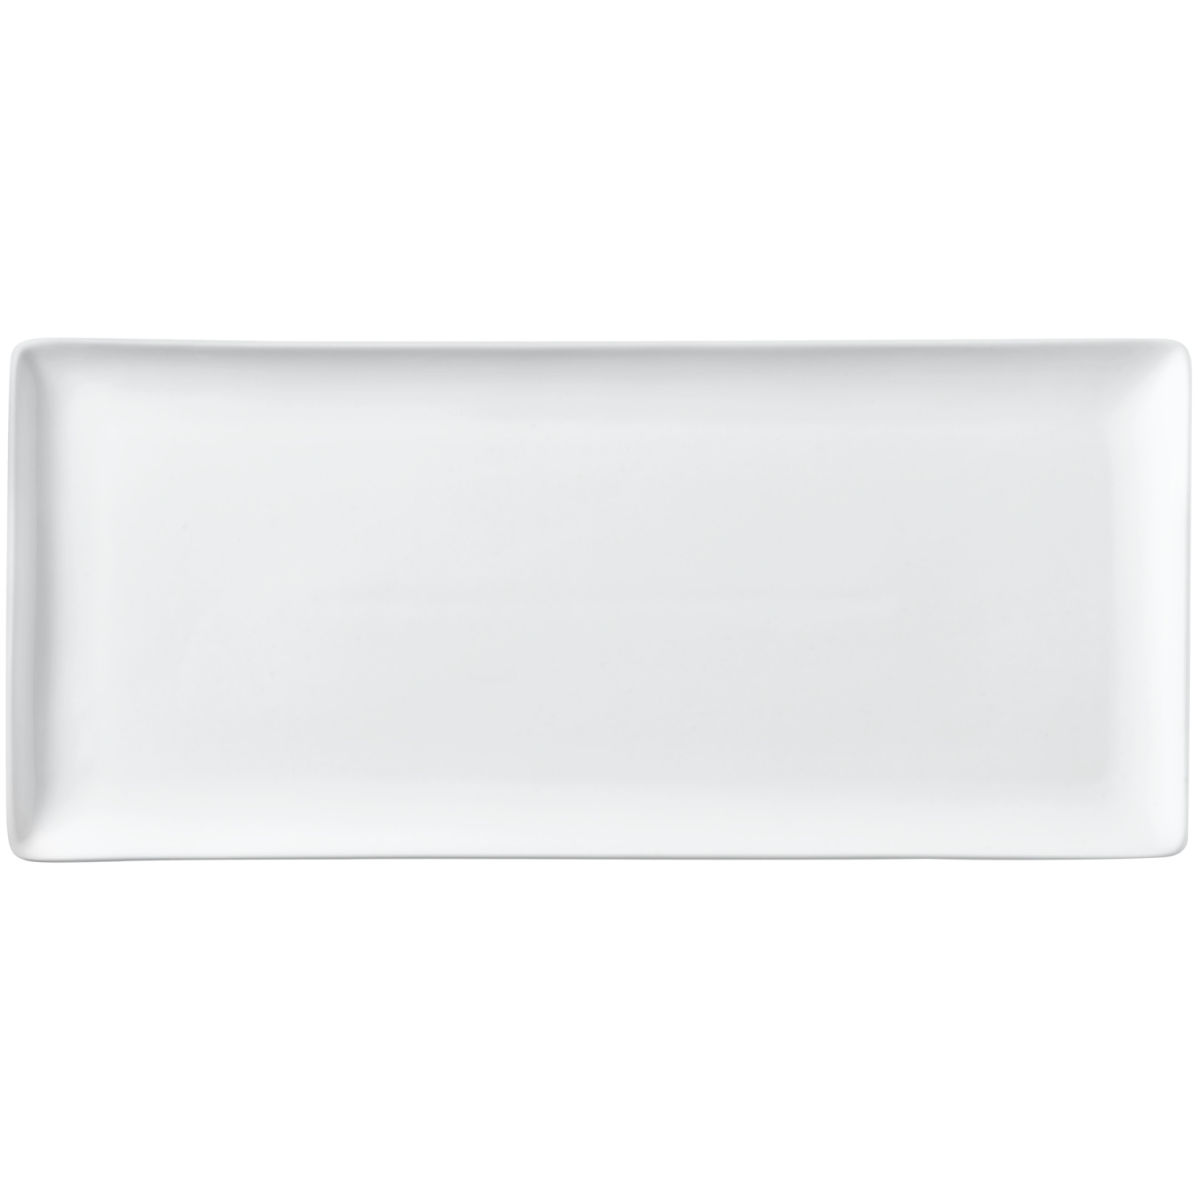 Vega Plat bord San Marino; 29x13x1.5 cm (LxBxH); wit; 4 stuk / verpakking